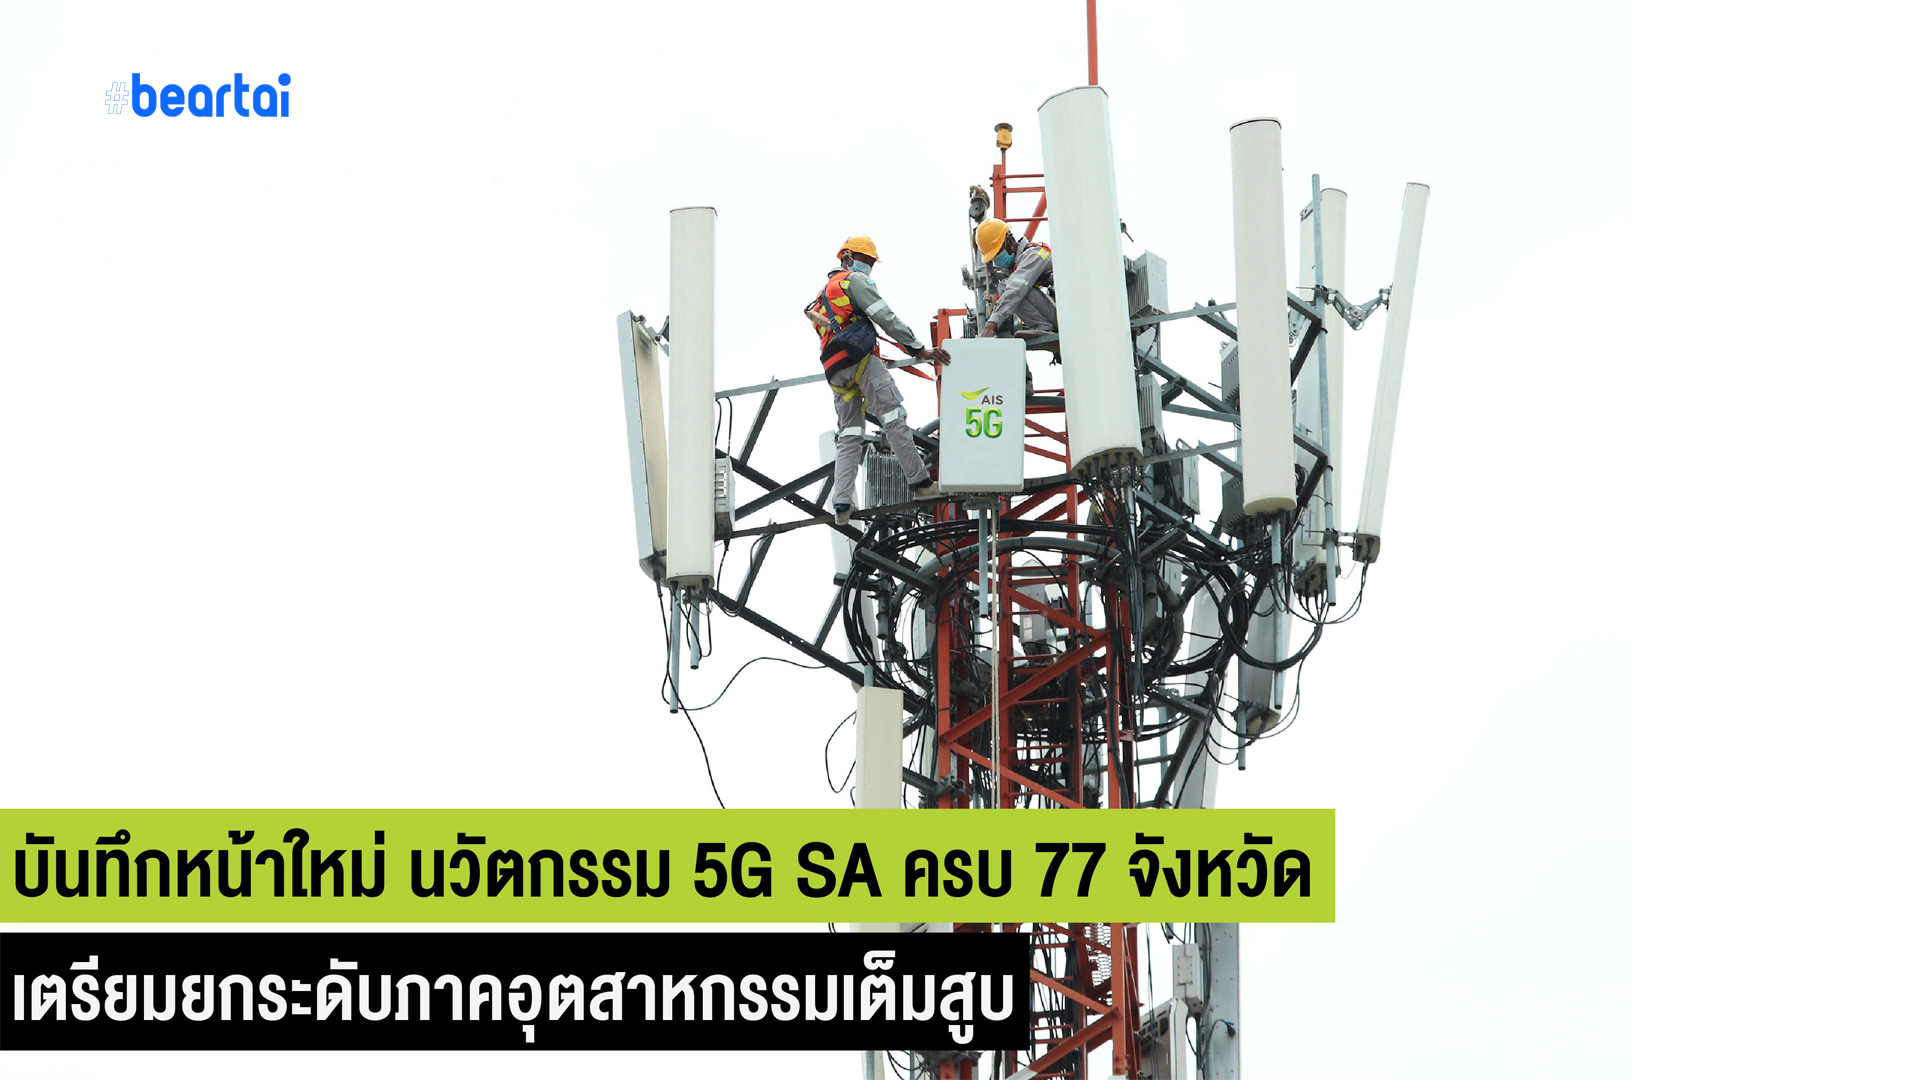 บันทึกหน้าใหม่ นวัตกรรม 5G ประเทศไทย AIS ปูพรมเครือข่าย 5G SA ครบ 77 จังหวัด